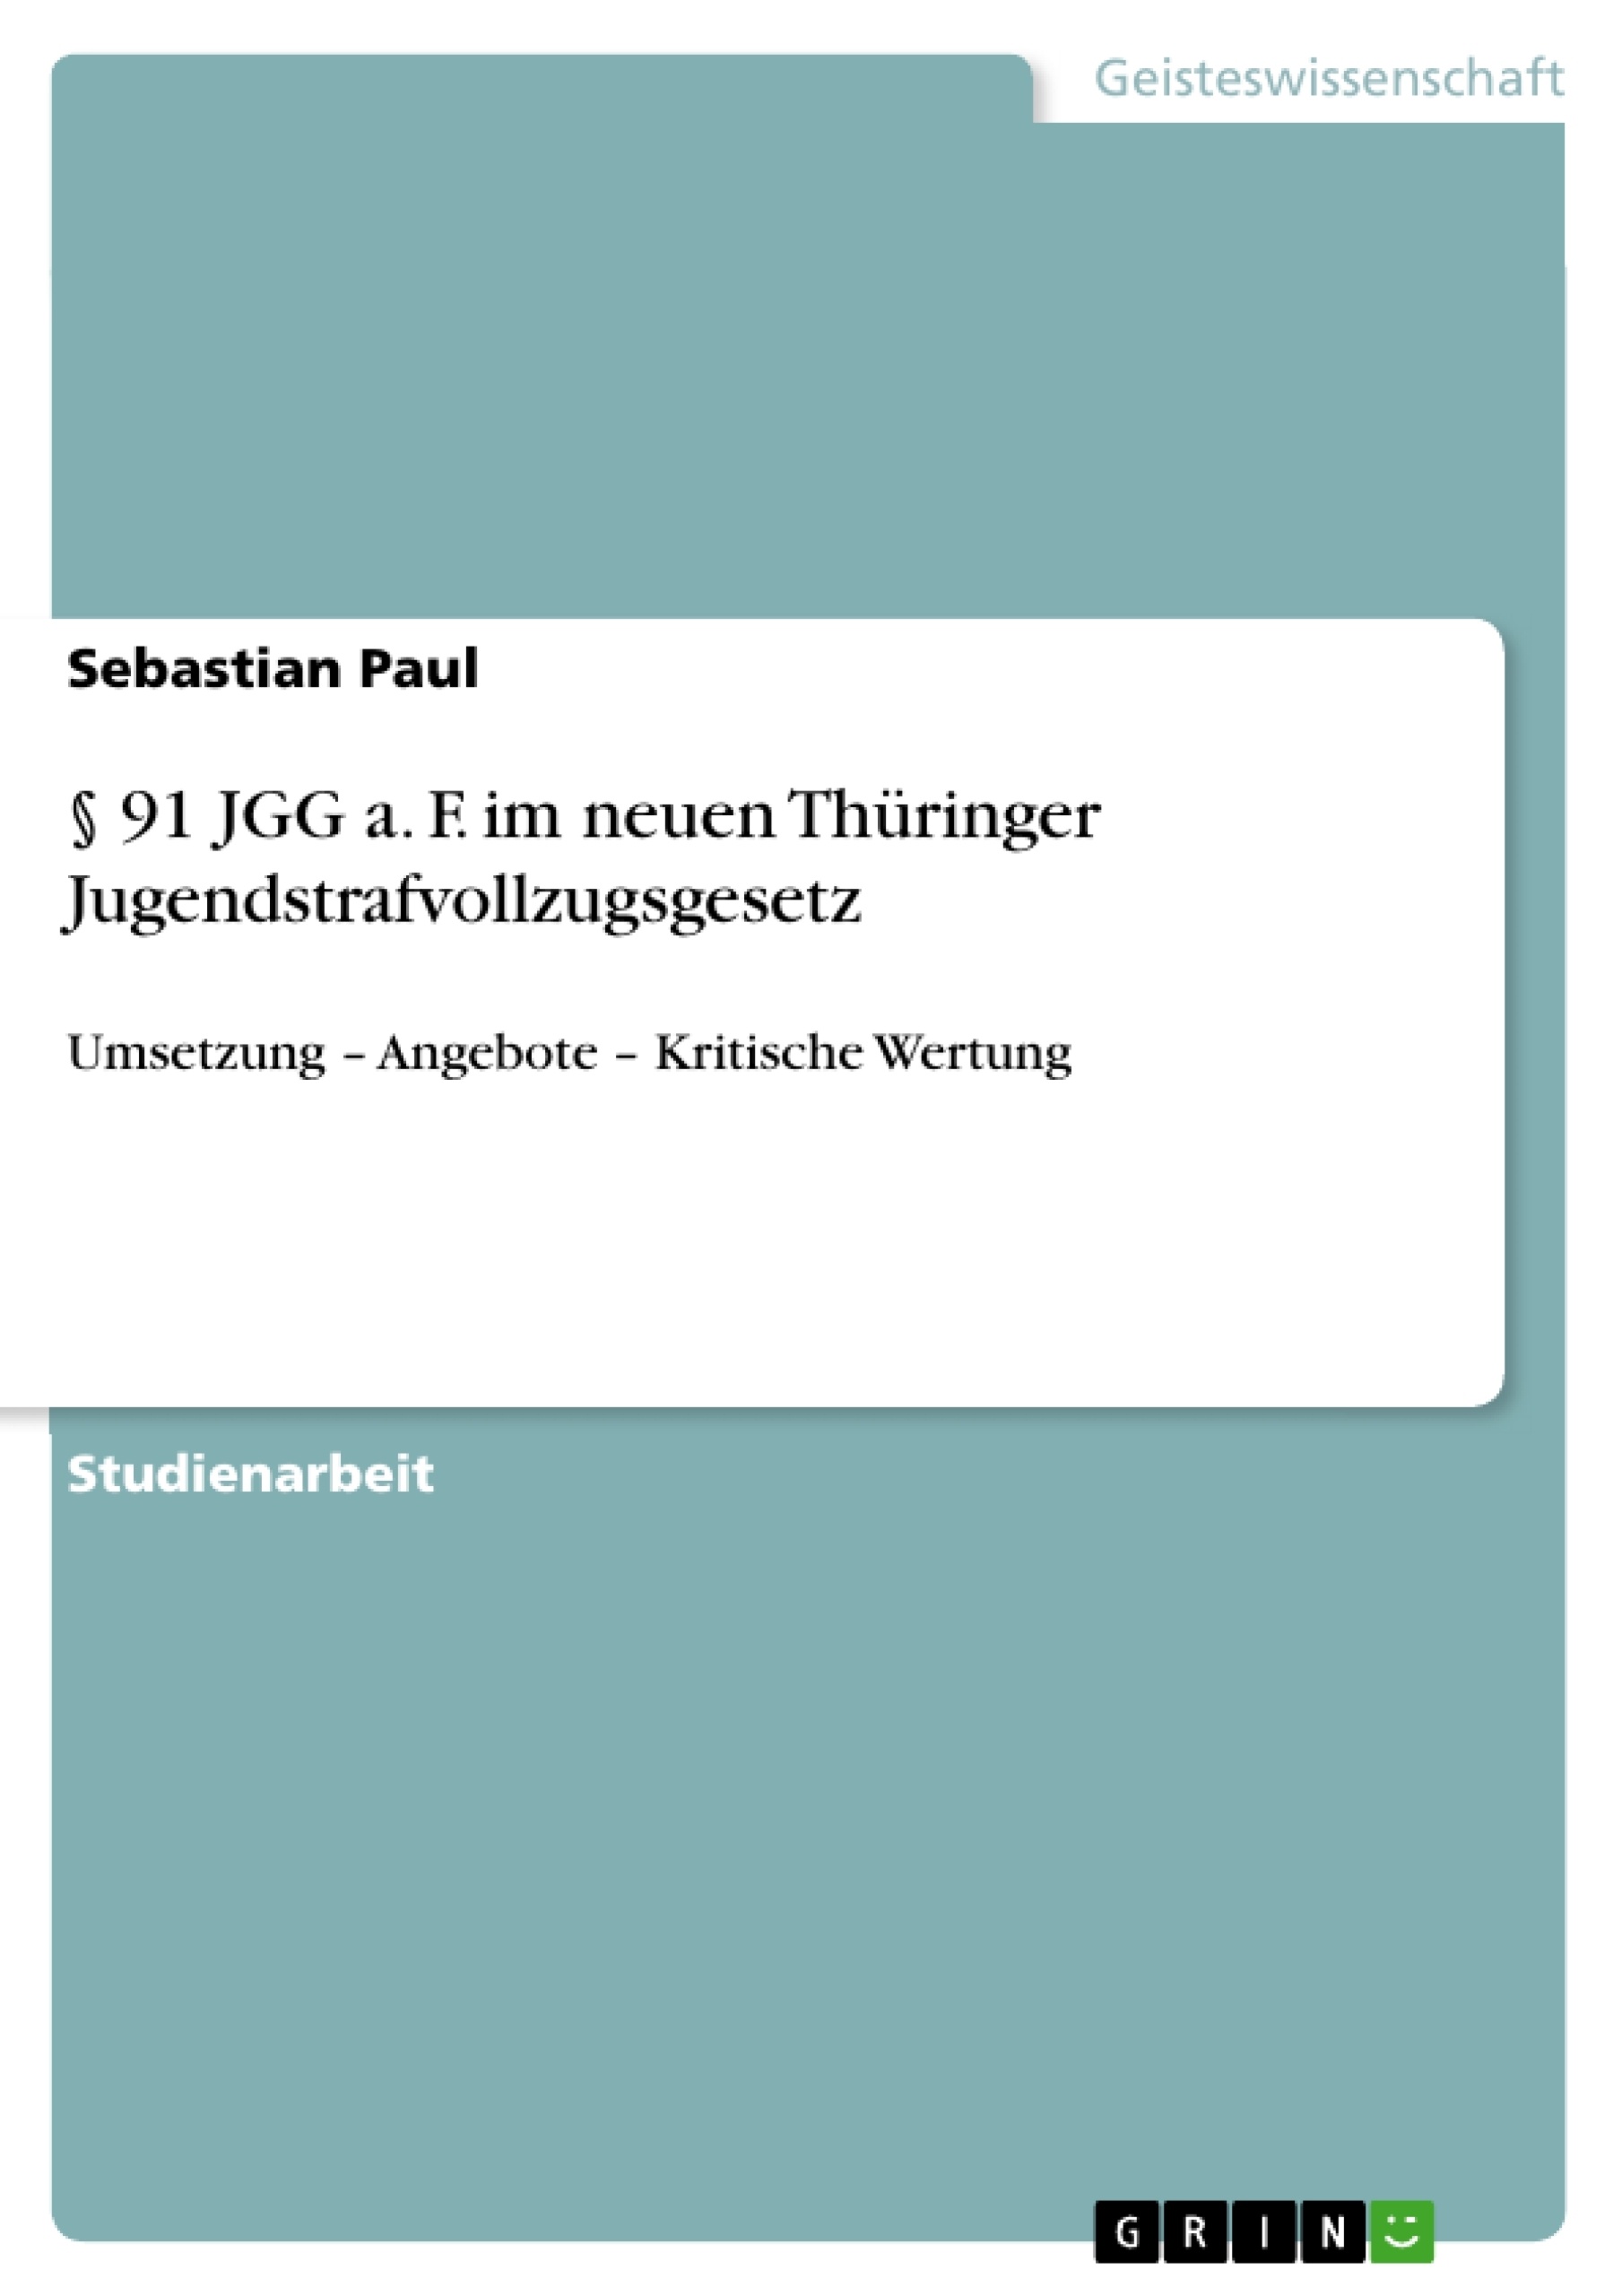 Título: § 91 JGG a. F. im neuen Thüringer Jugendstrafvollzugsgesetz